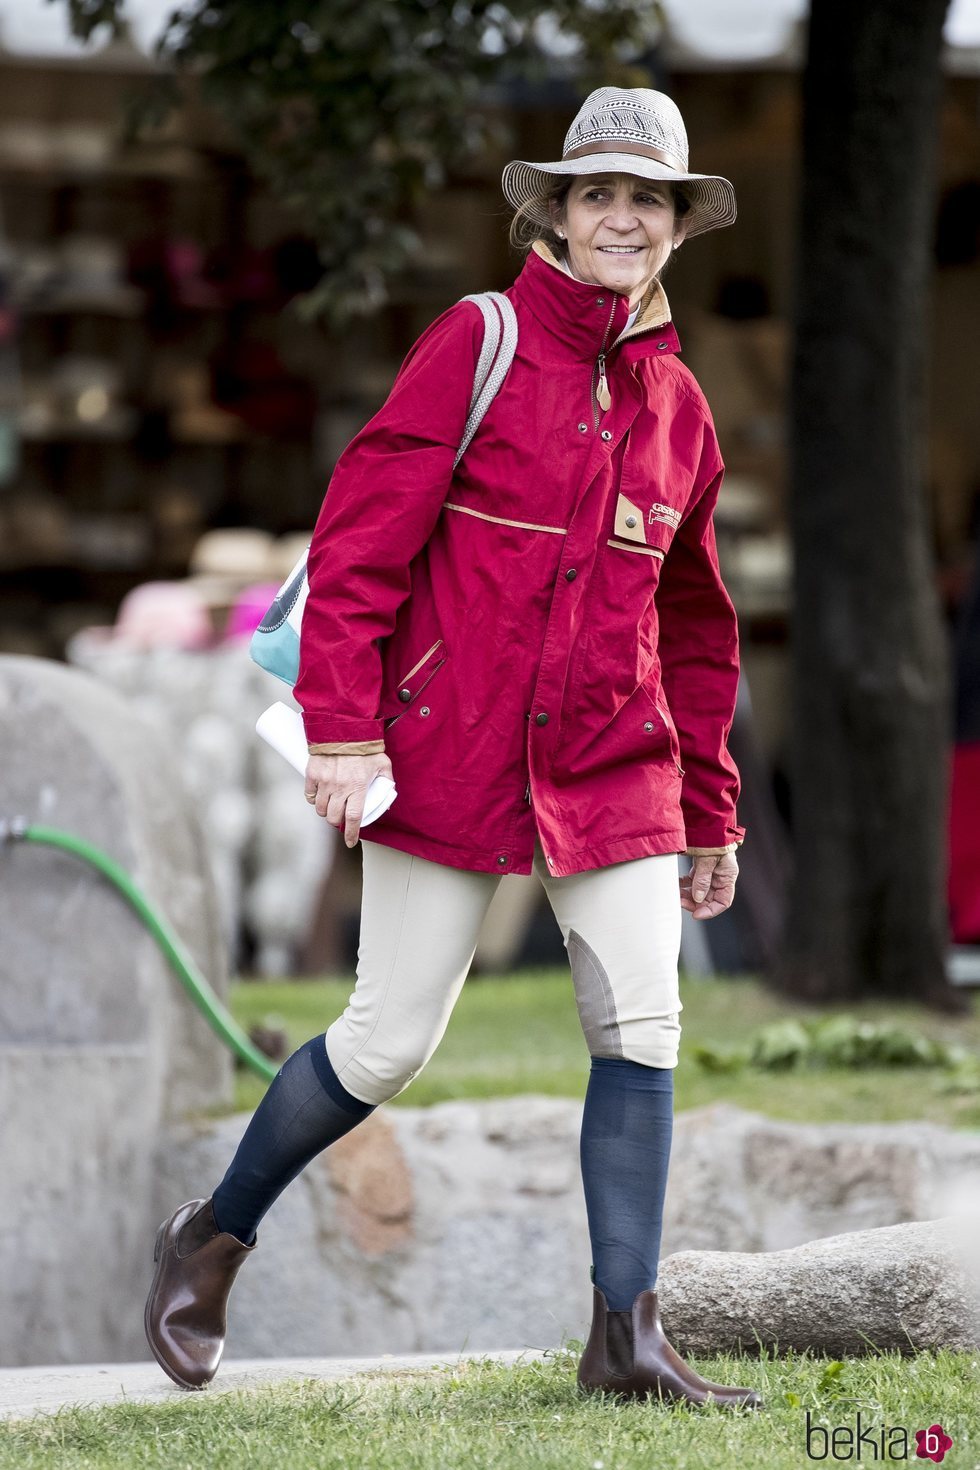 La Infanta Elena en el Concurso de Saltos de Madrid de 2019